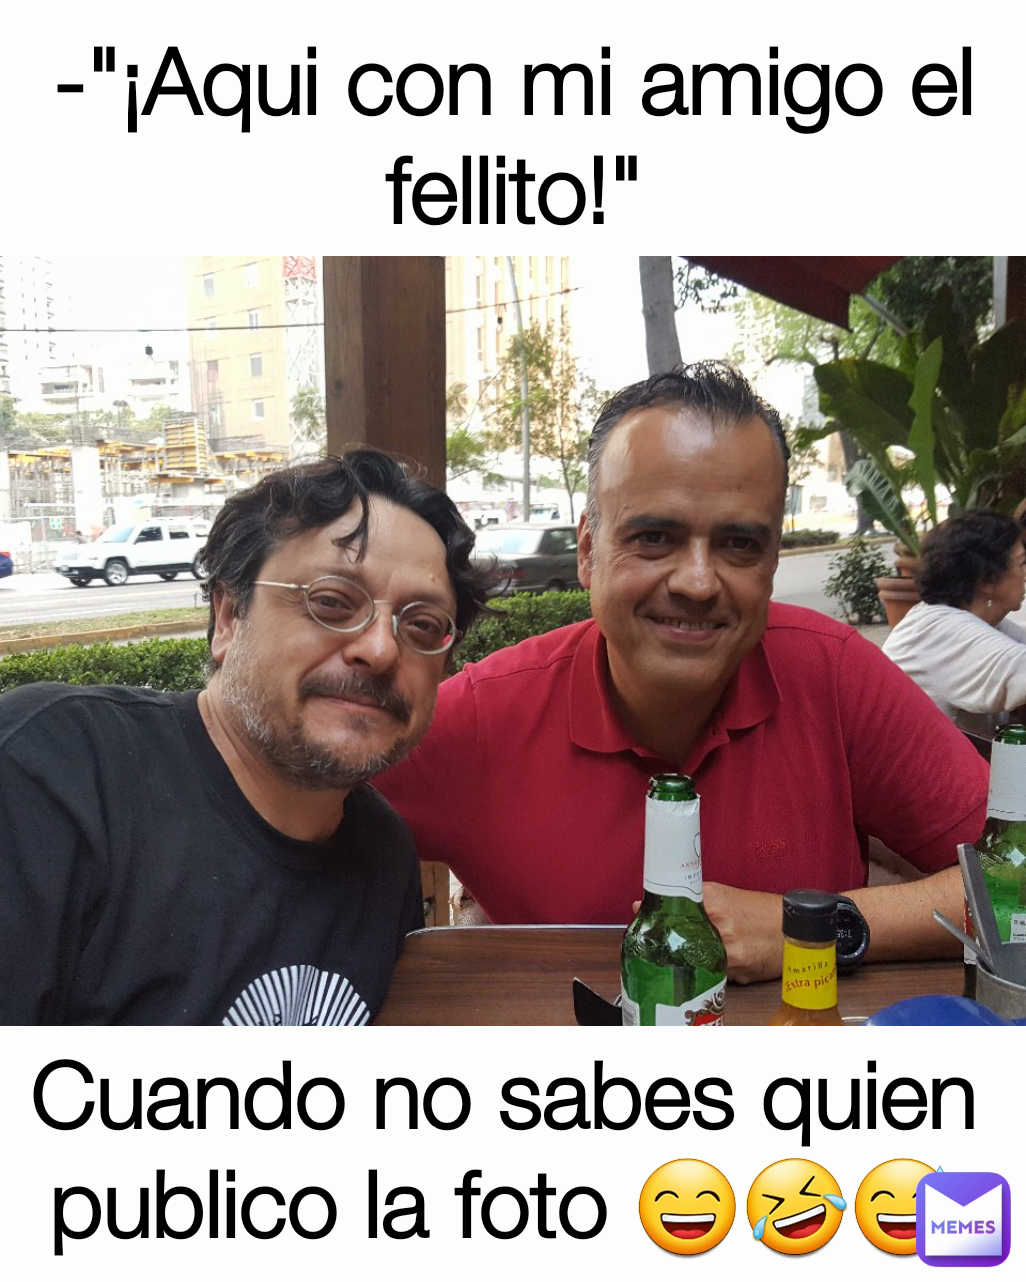 Aqui Con Mi Amigo El Fellito Cuando No Sabes Quien Publico La Foto 😄🤣😅 Bencky Memes 